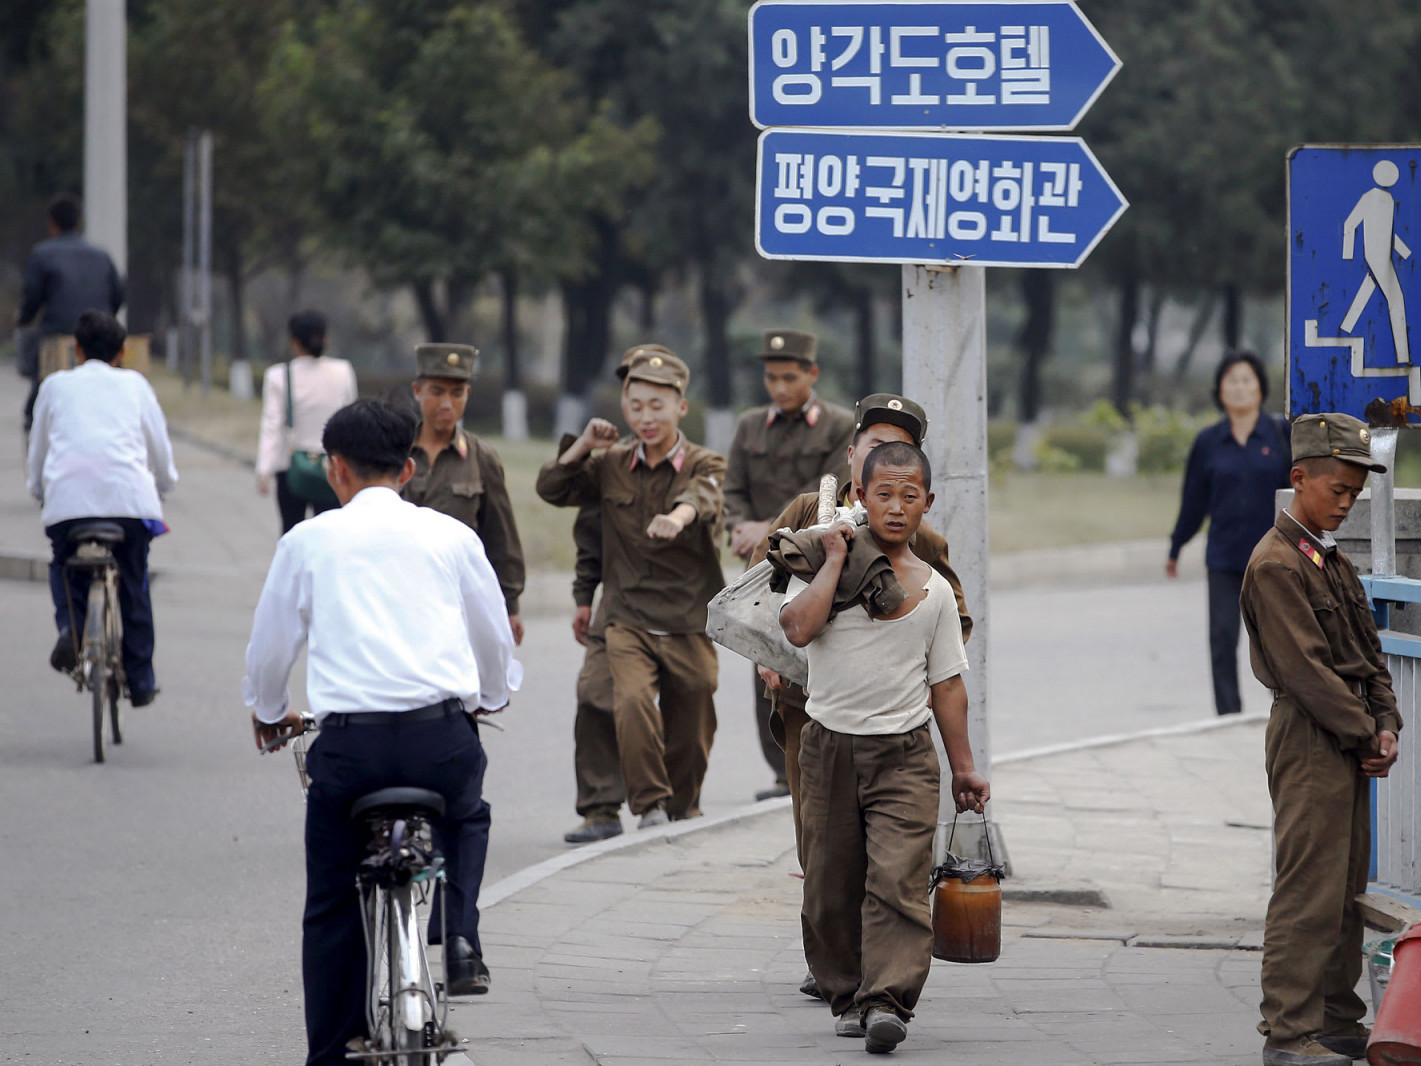 БНАСАУ Өмнөд Солонгостой хил залгаа орших Кесонд тогтоосон хөл хориогоо цуцалжээ